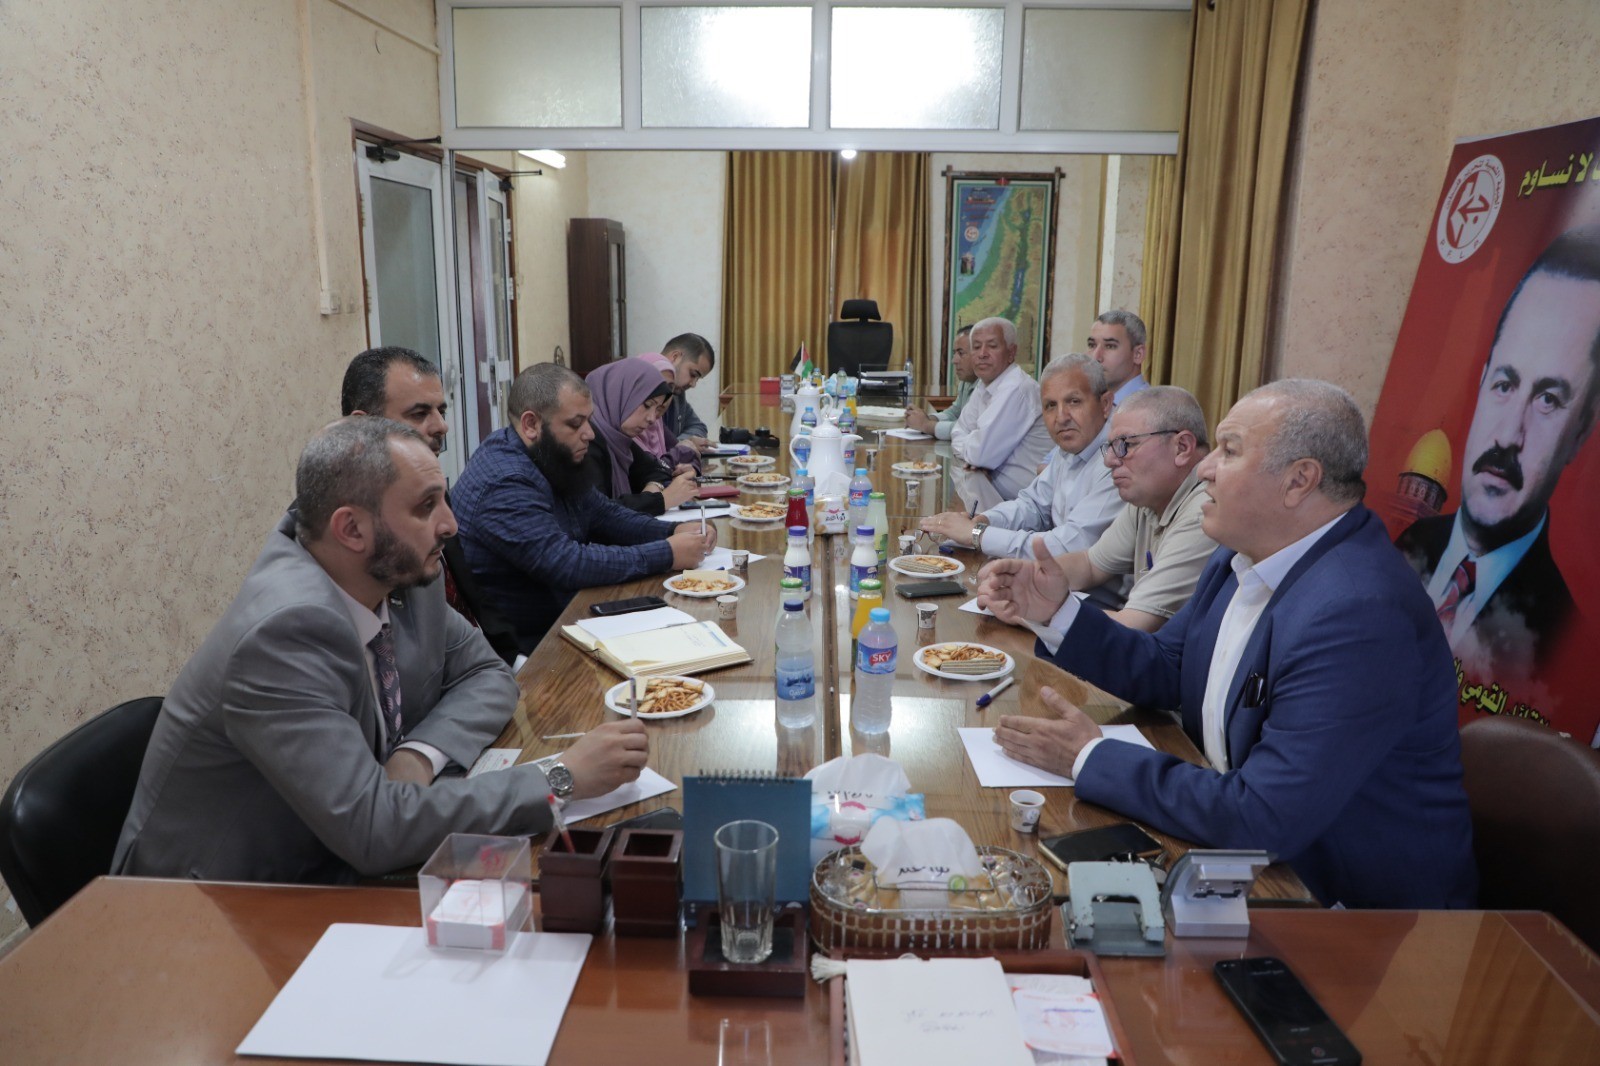 5 لجنة العمل النقابي في الجبهة الشعبية تستقبل وفدًا من وزارة العمل بغزة 6.jpg